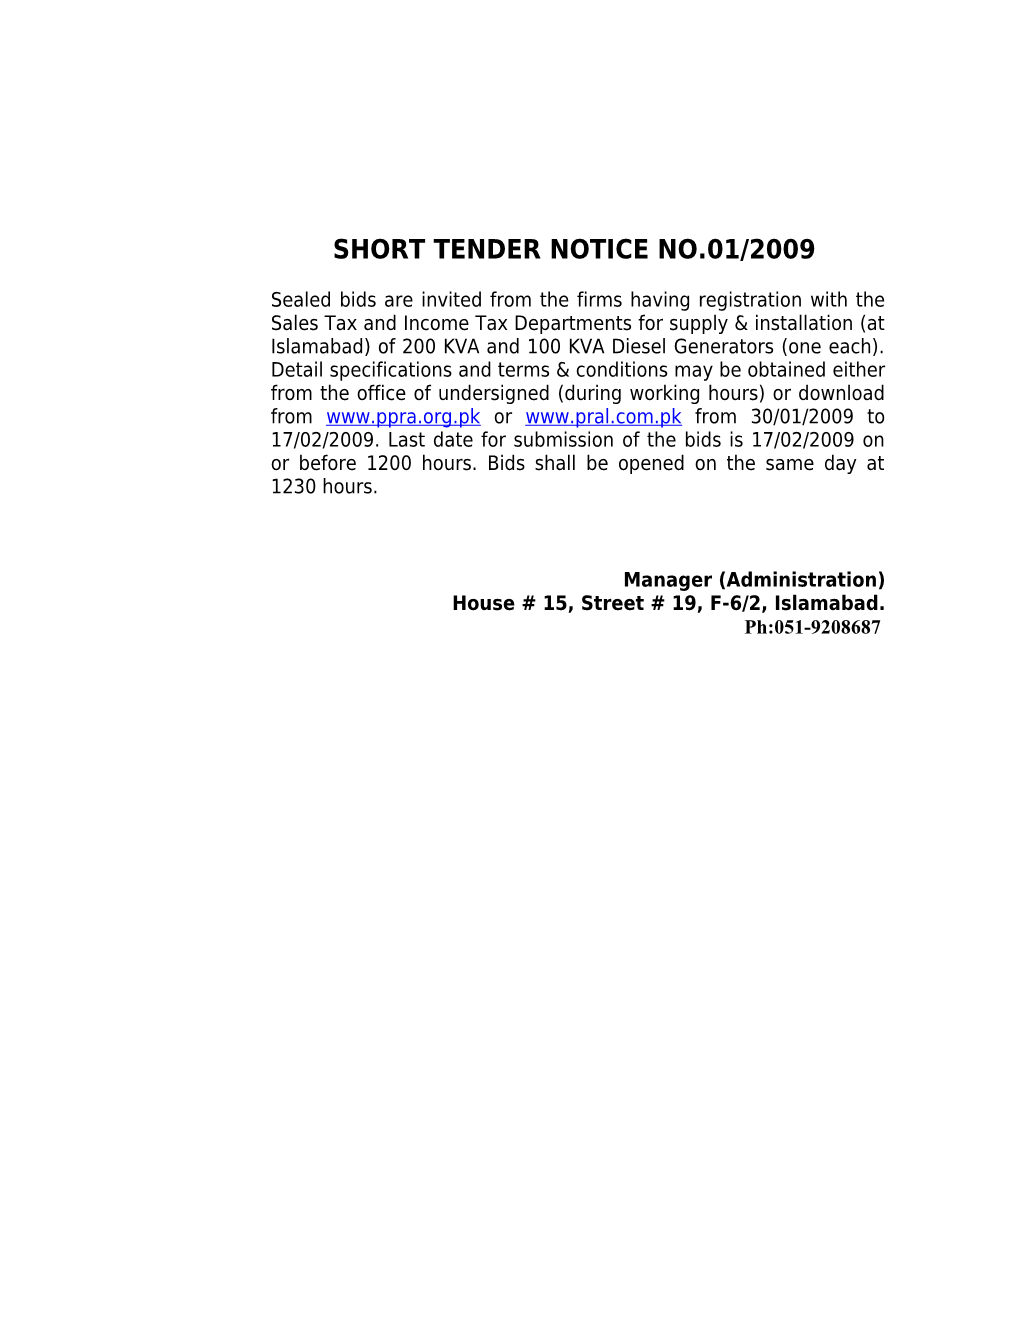 Short Tender Notice No.01/2009